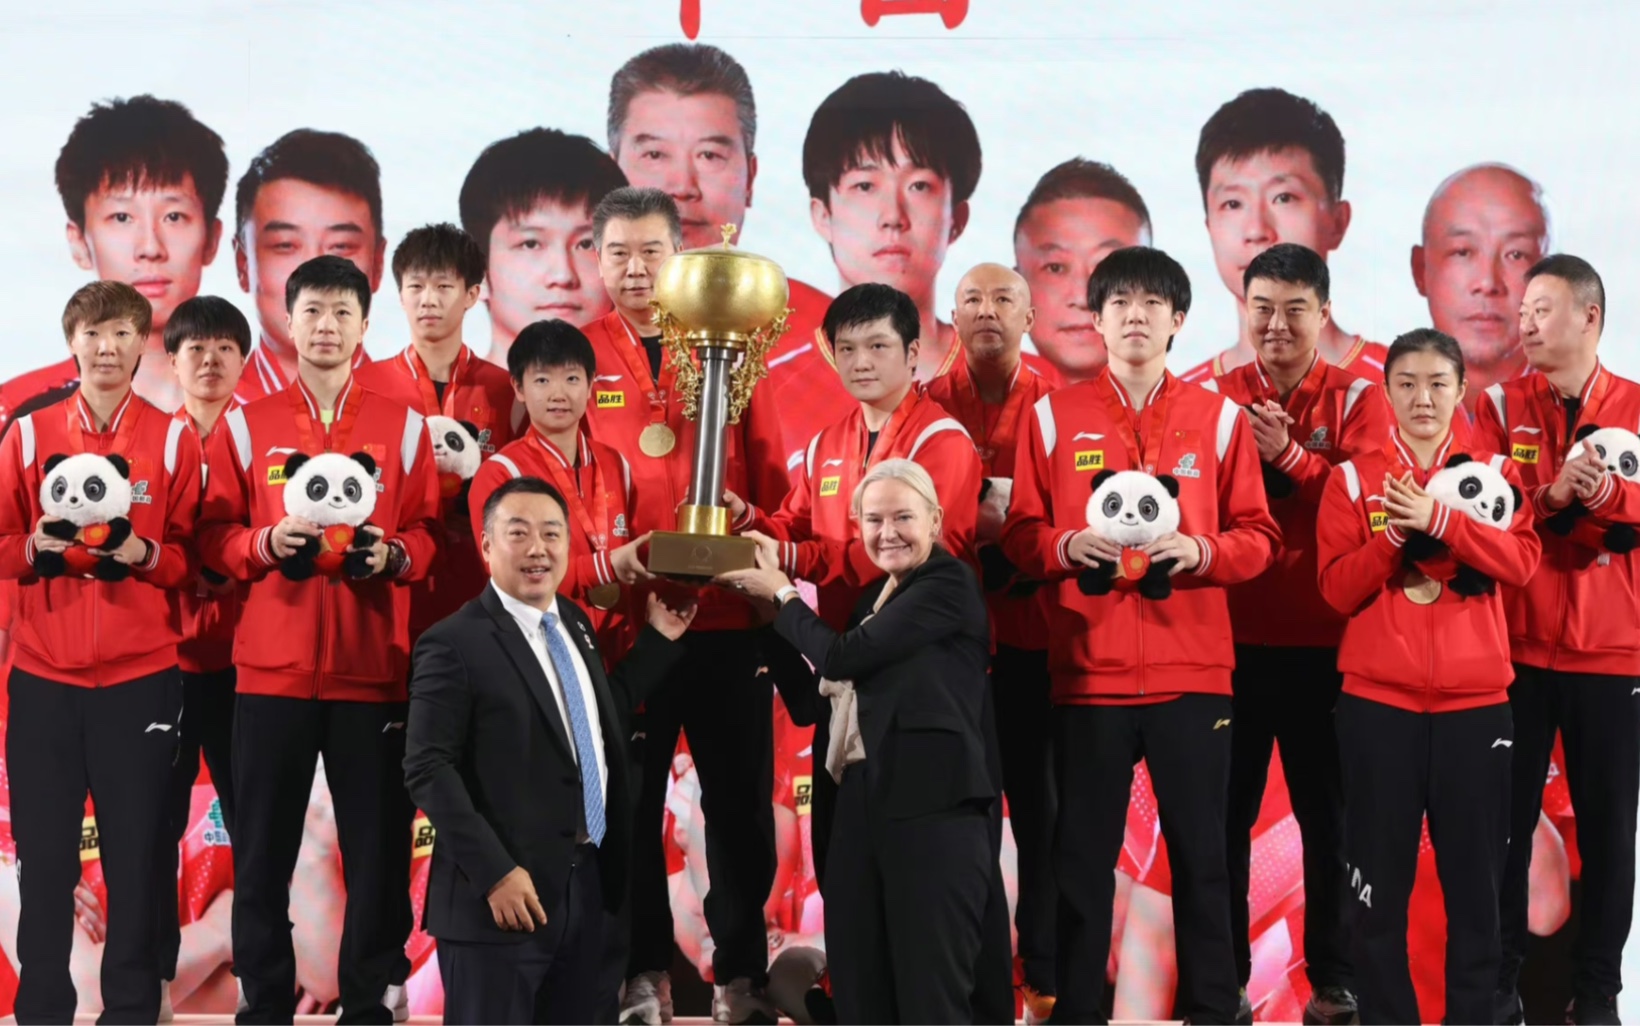 恭喜中国国家乒乓球队荣获首届世界乒联混合团体世界杯冠军